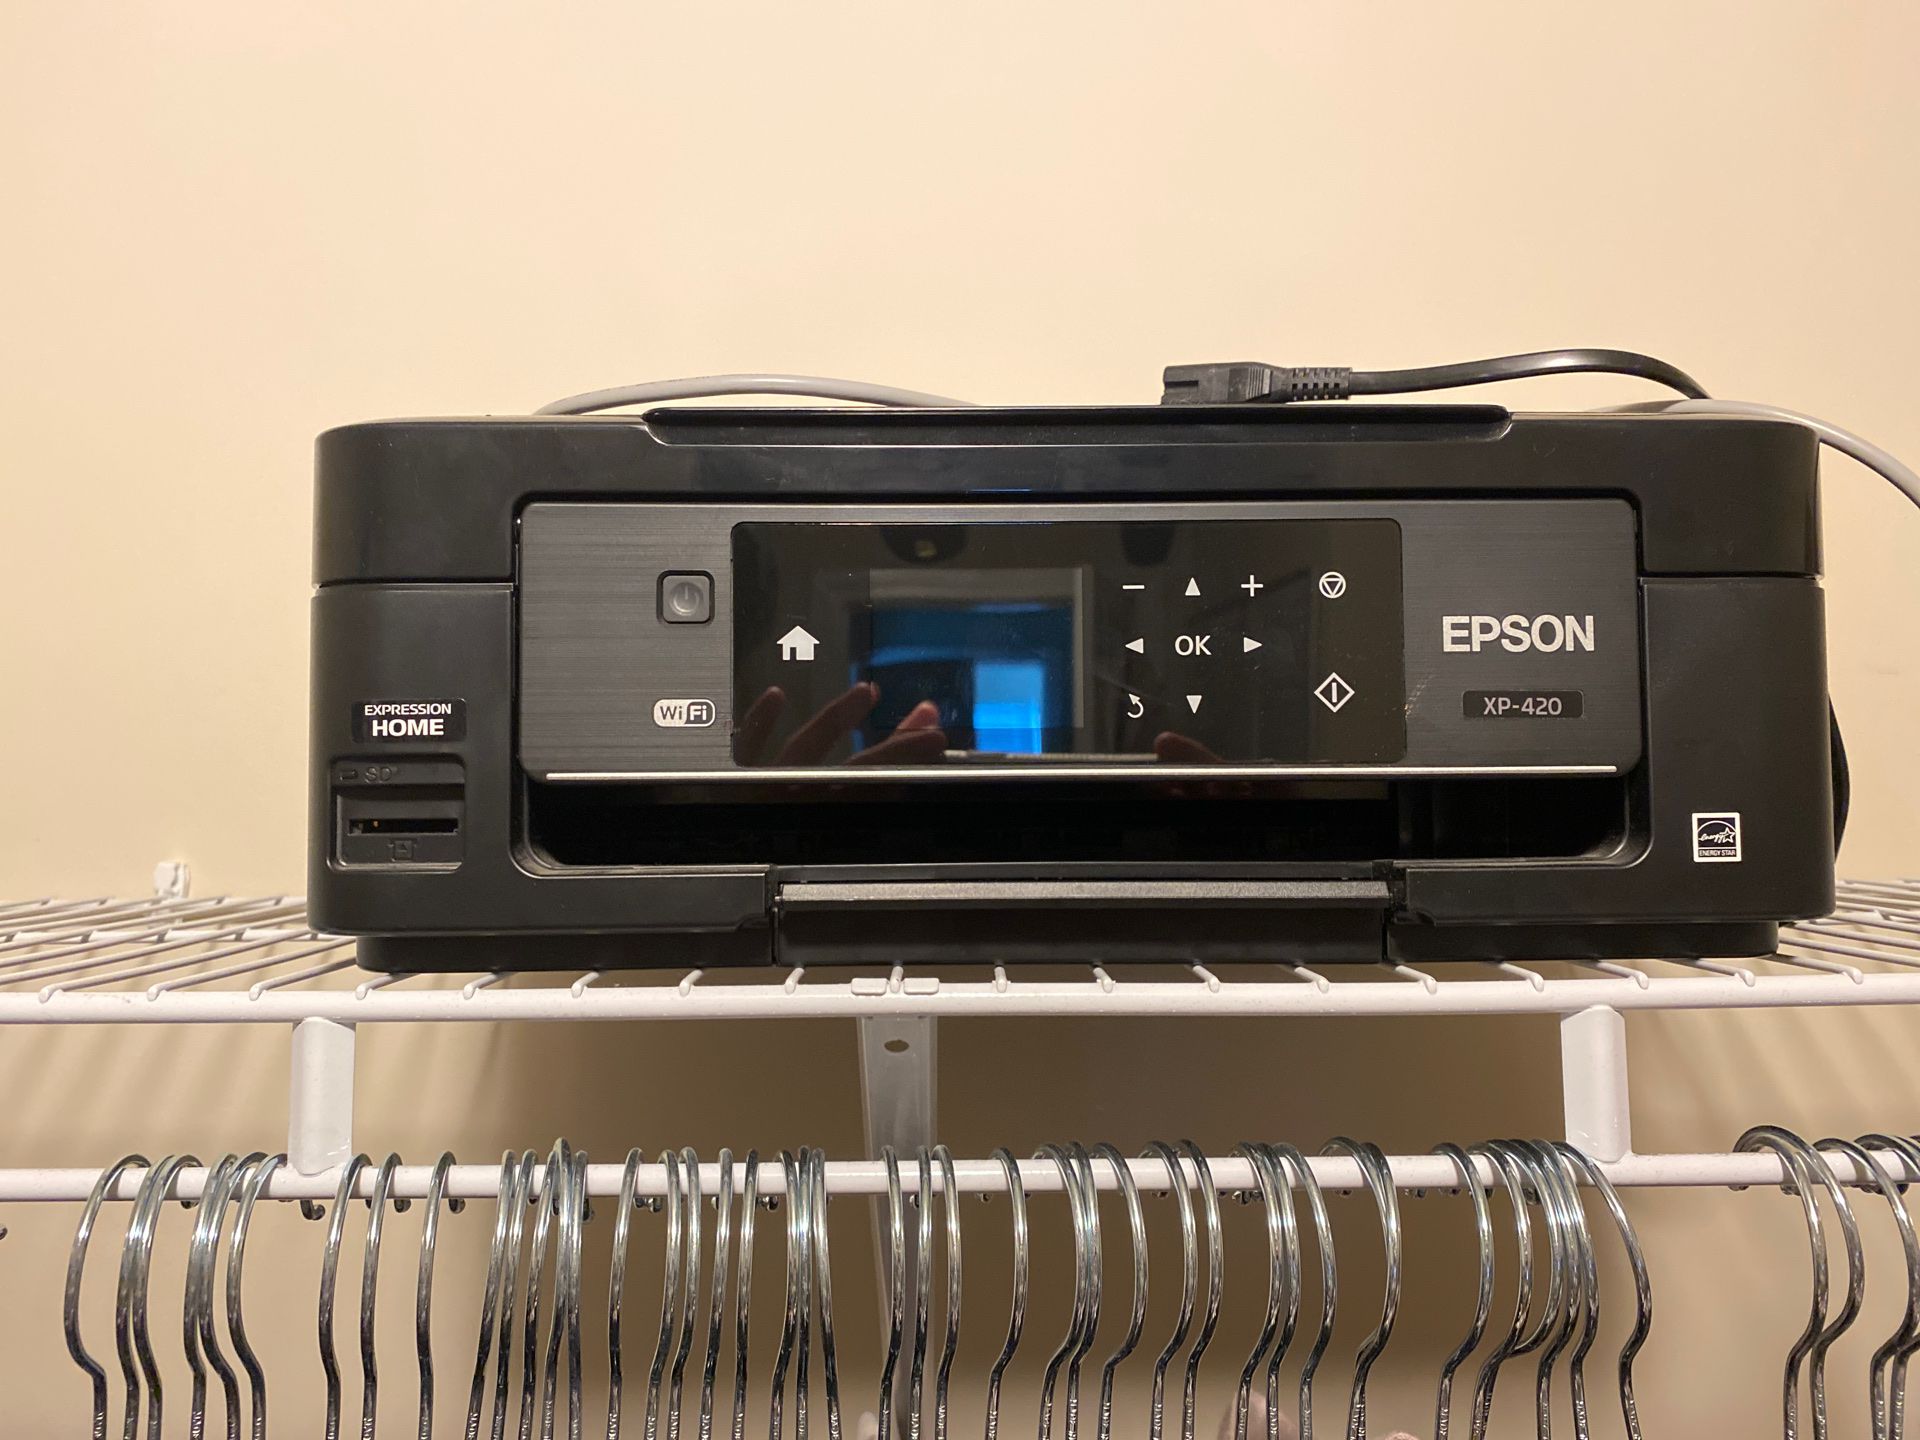 Epson xp-420 printer